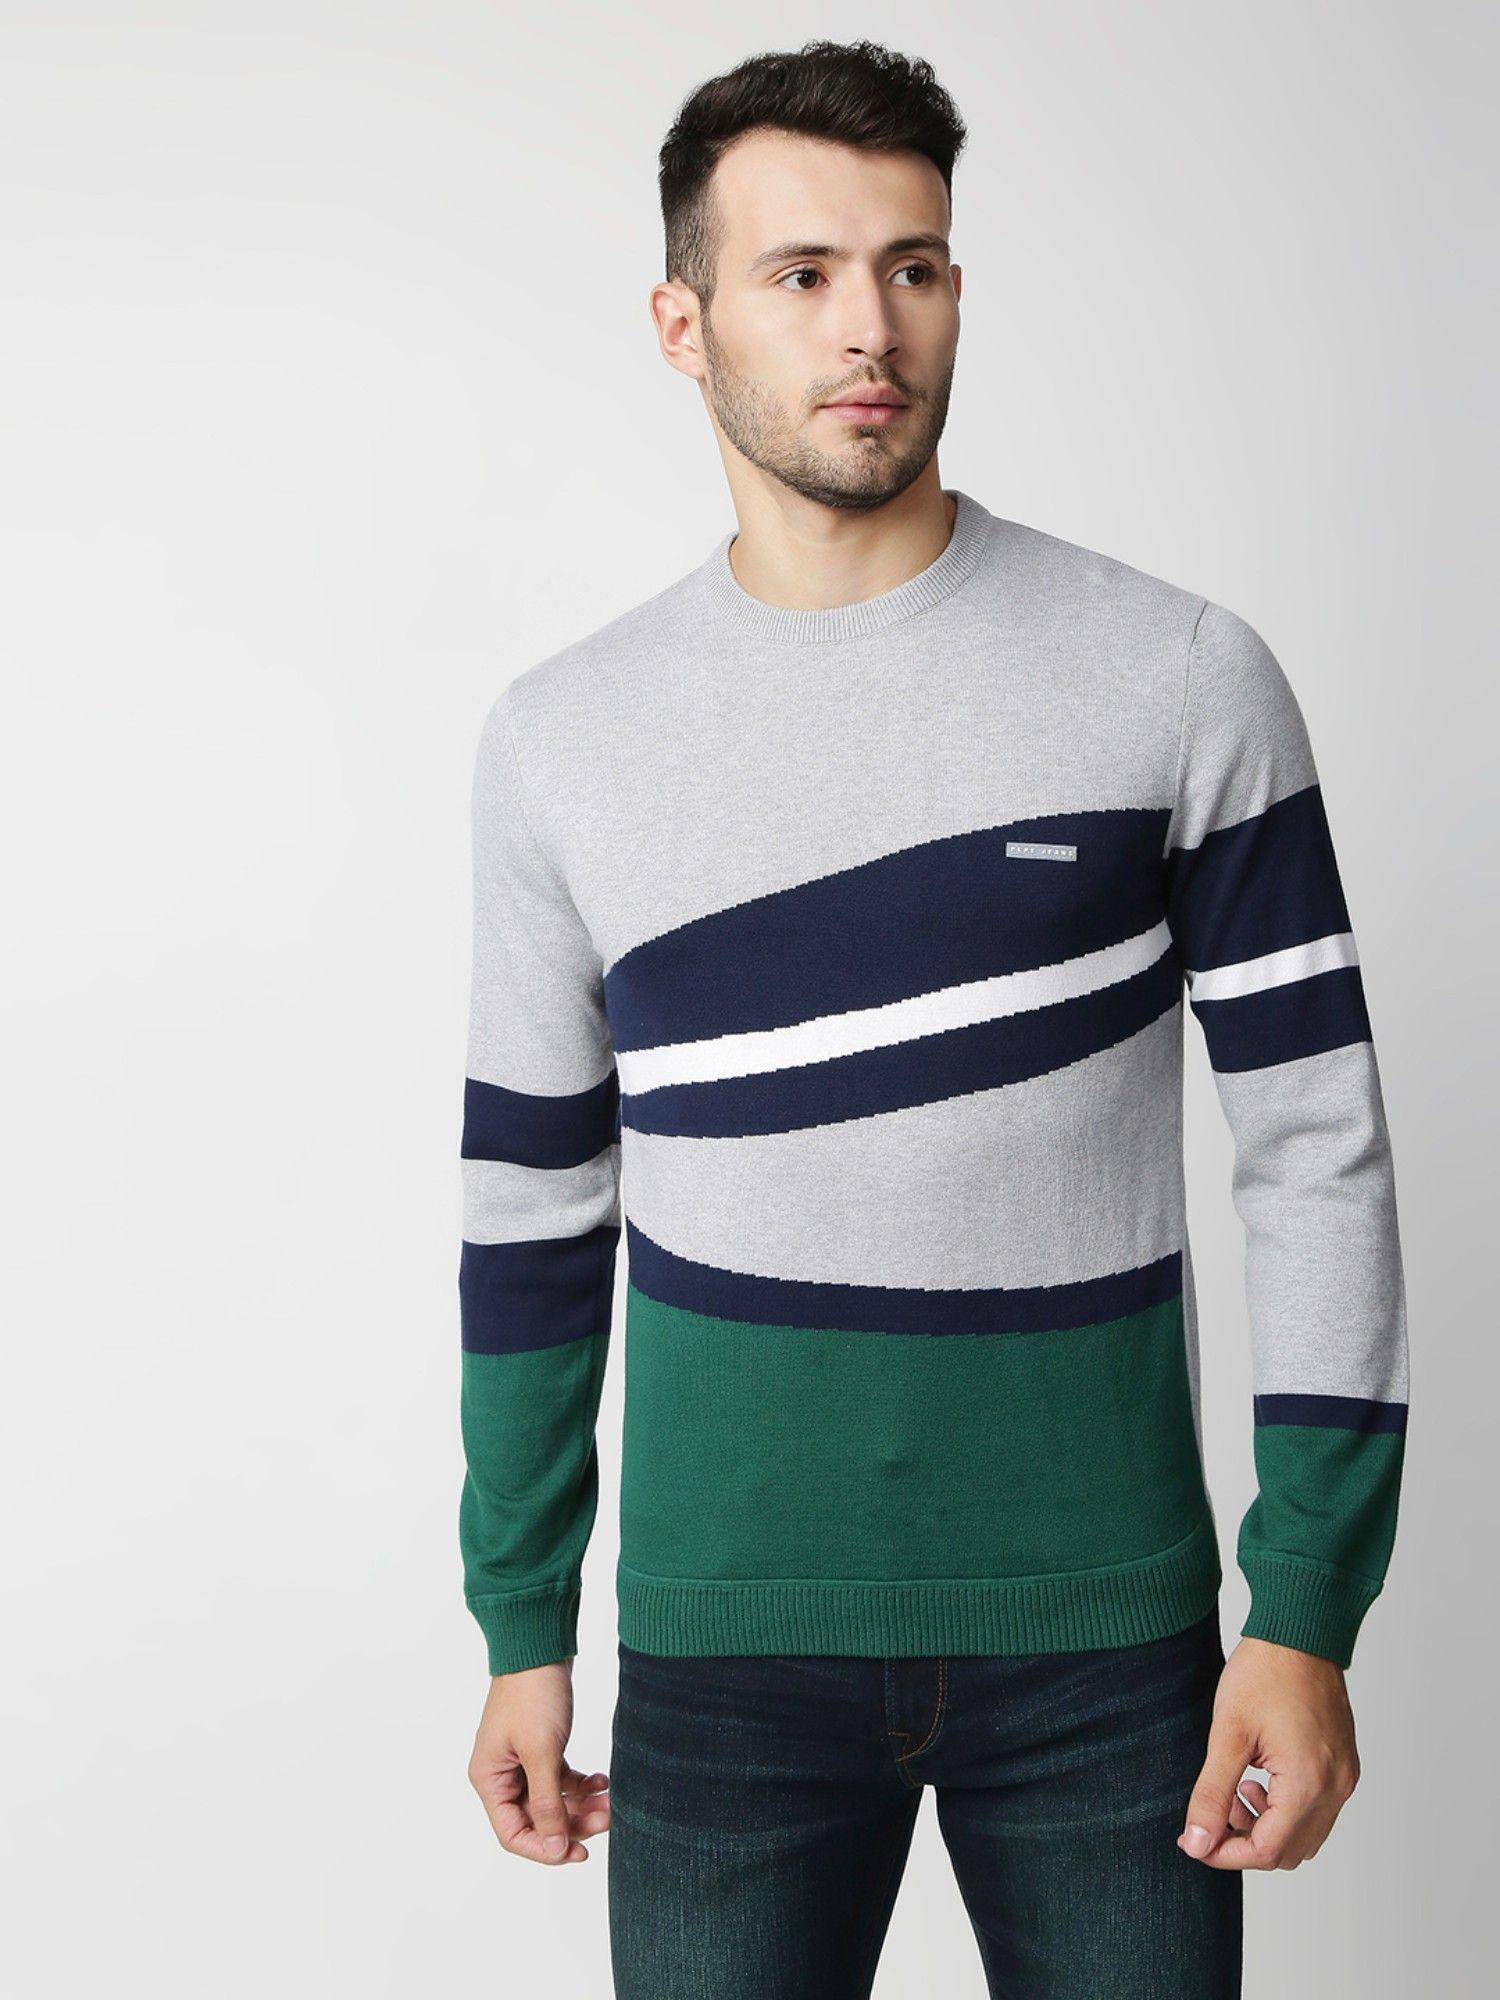 mariano-trendy-color-block-multi-color-sweater